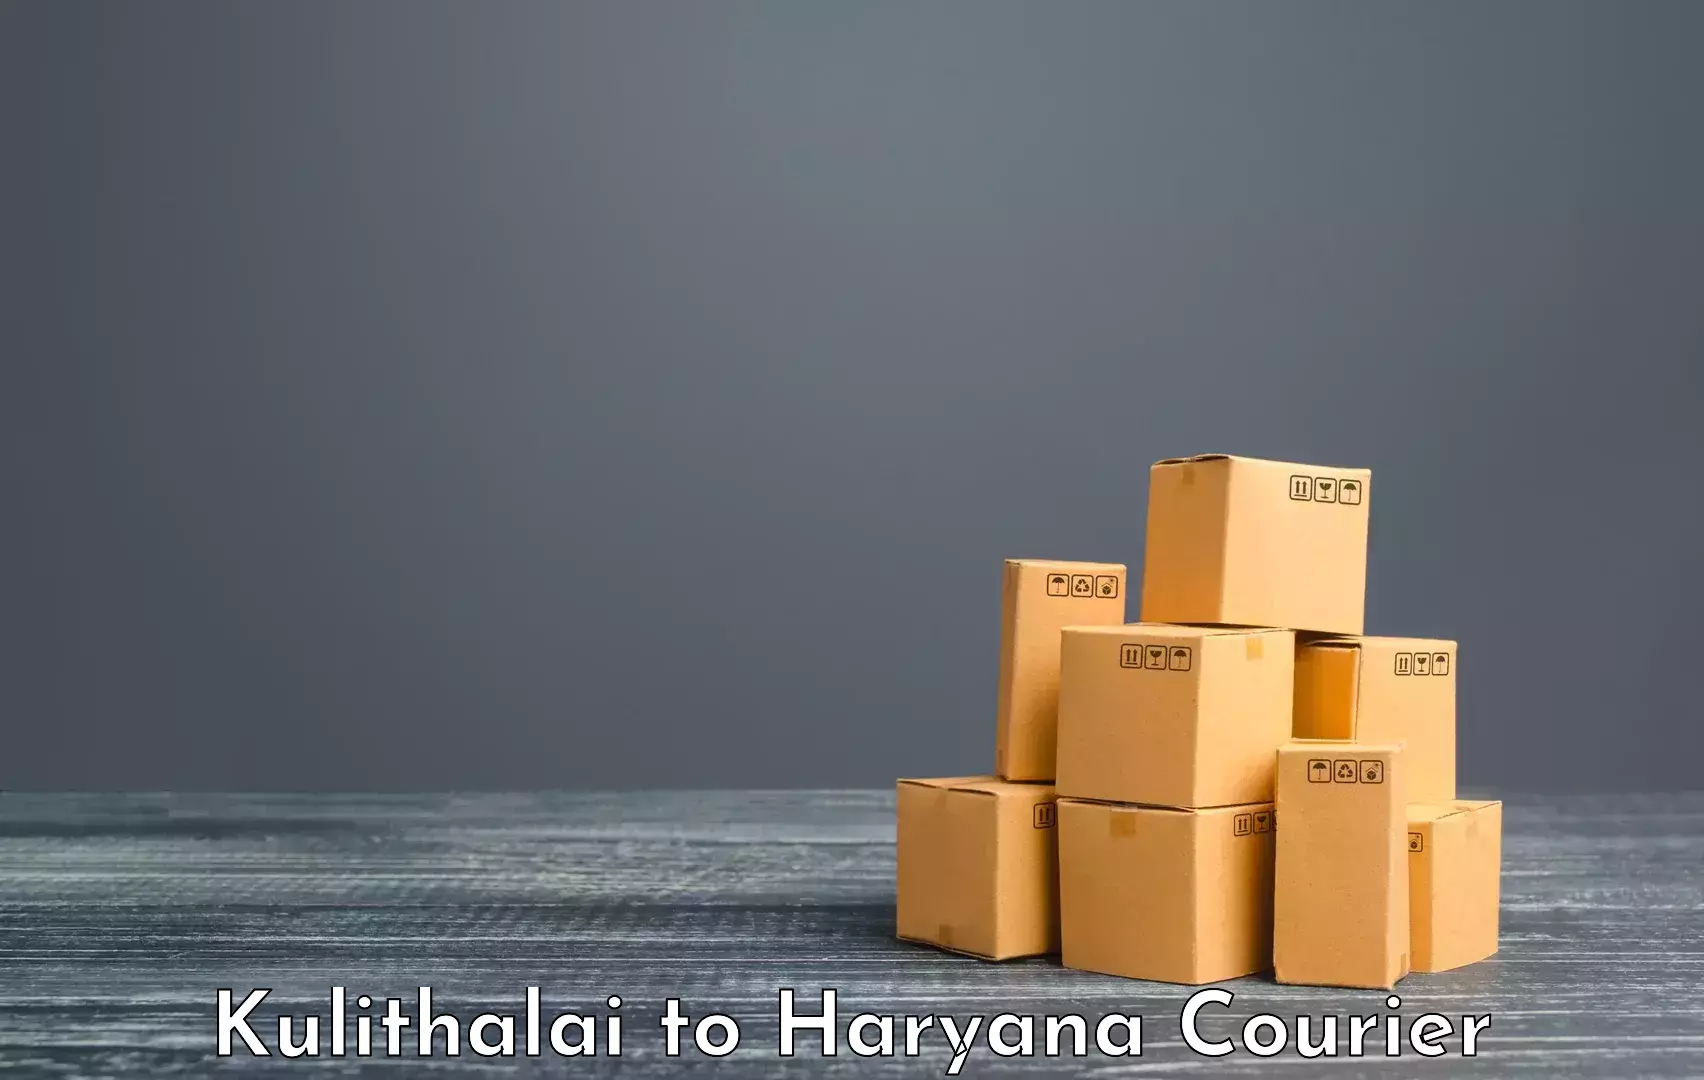 Luggage transport company Kulithalai to Haryana